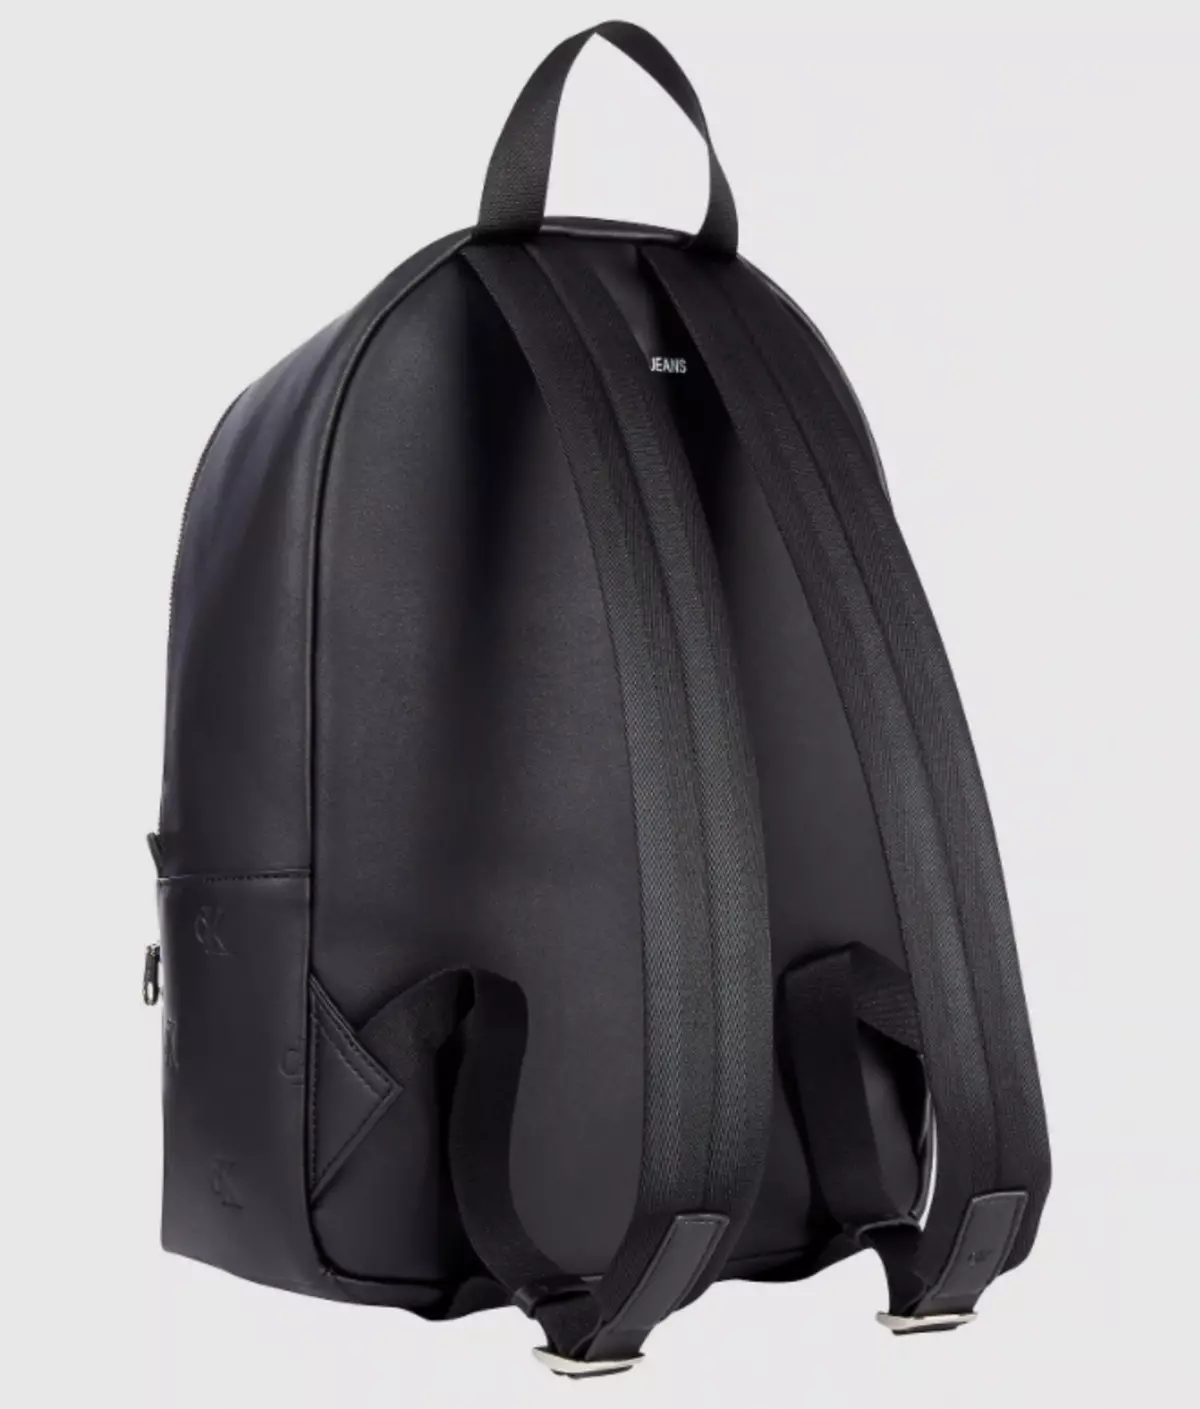 Calvin Klein Backpacks: Female reş û mêr û mêr, çermê sor, spî, zer bi monogram û rengên rengîn ên din - Backpacks 15401_29